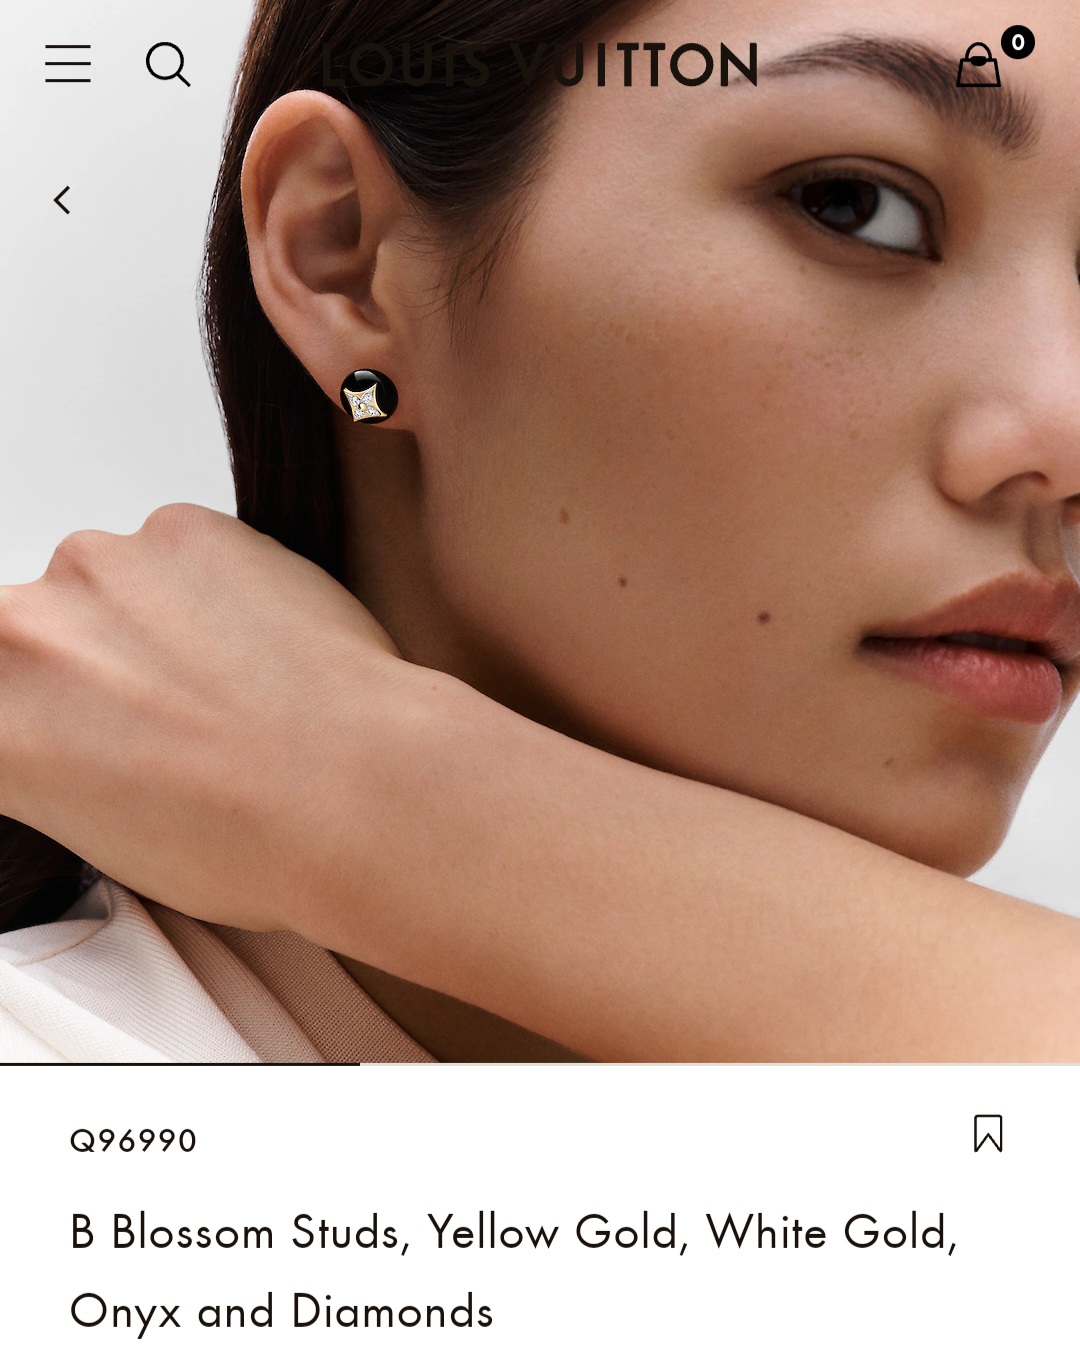 LV B Blossom Studs earrings